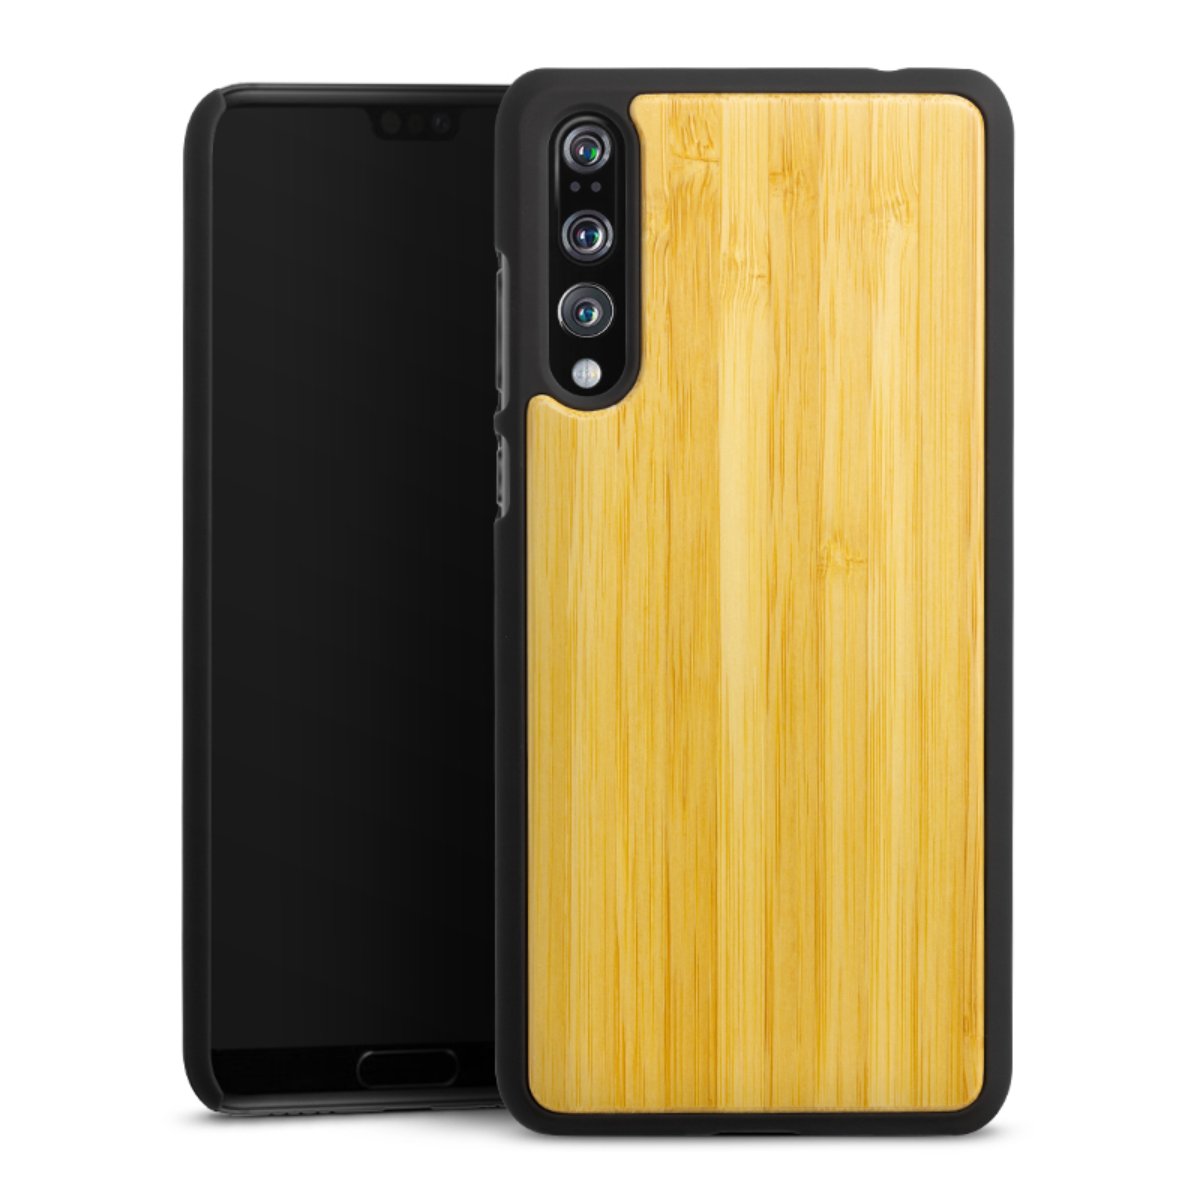 Wooden Hard Case für Huawei P20 Pro